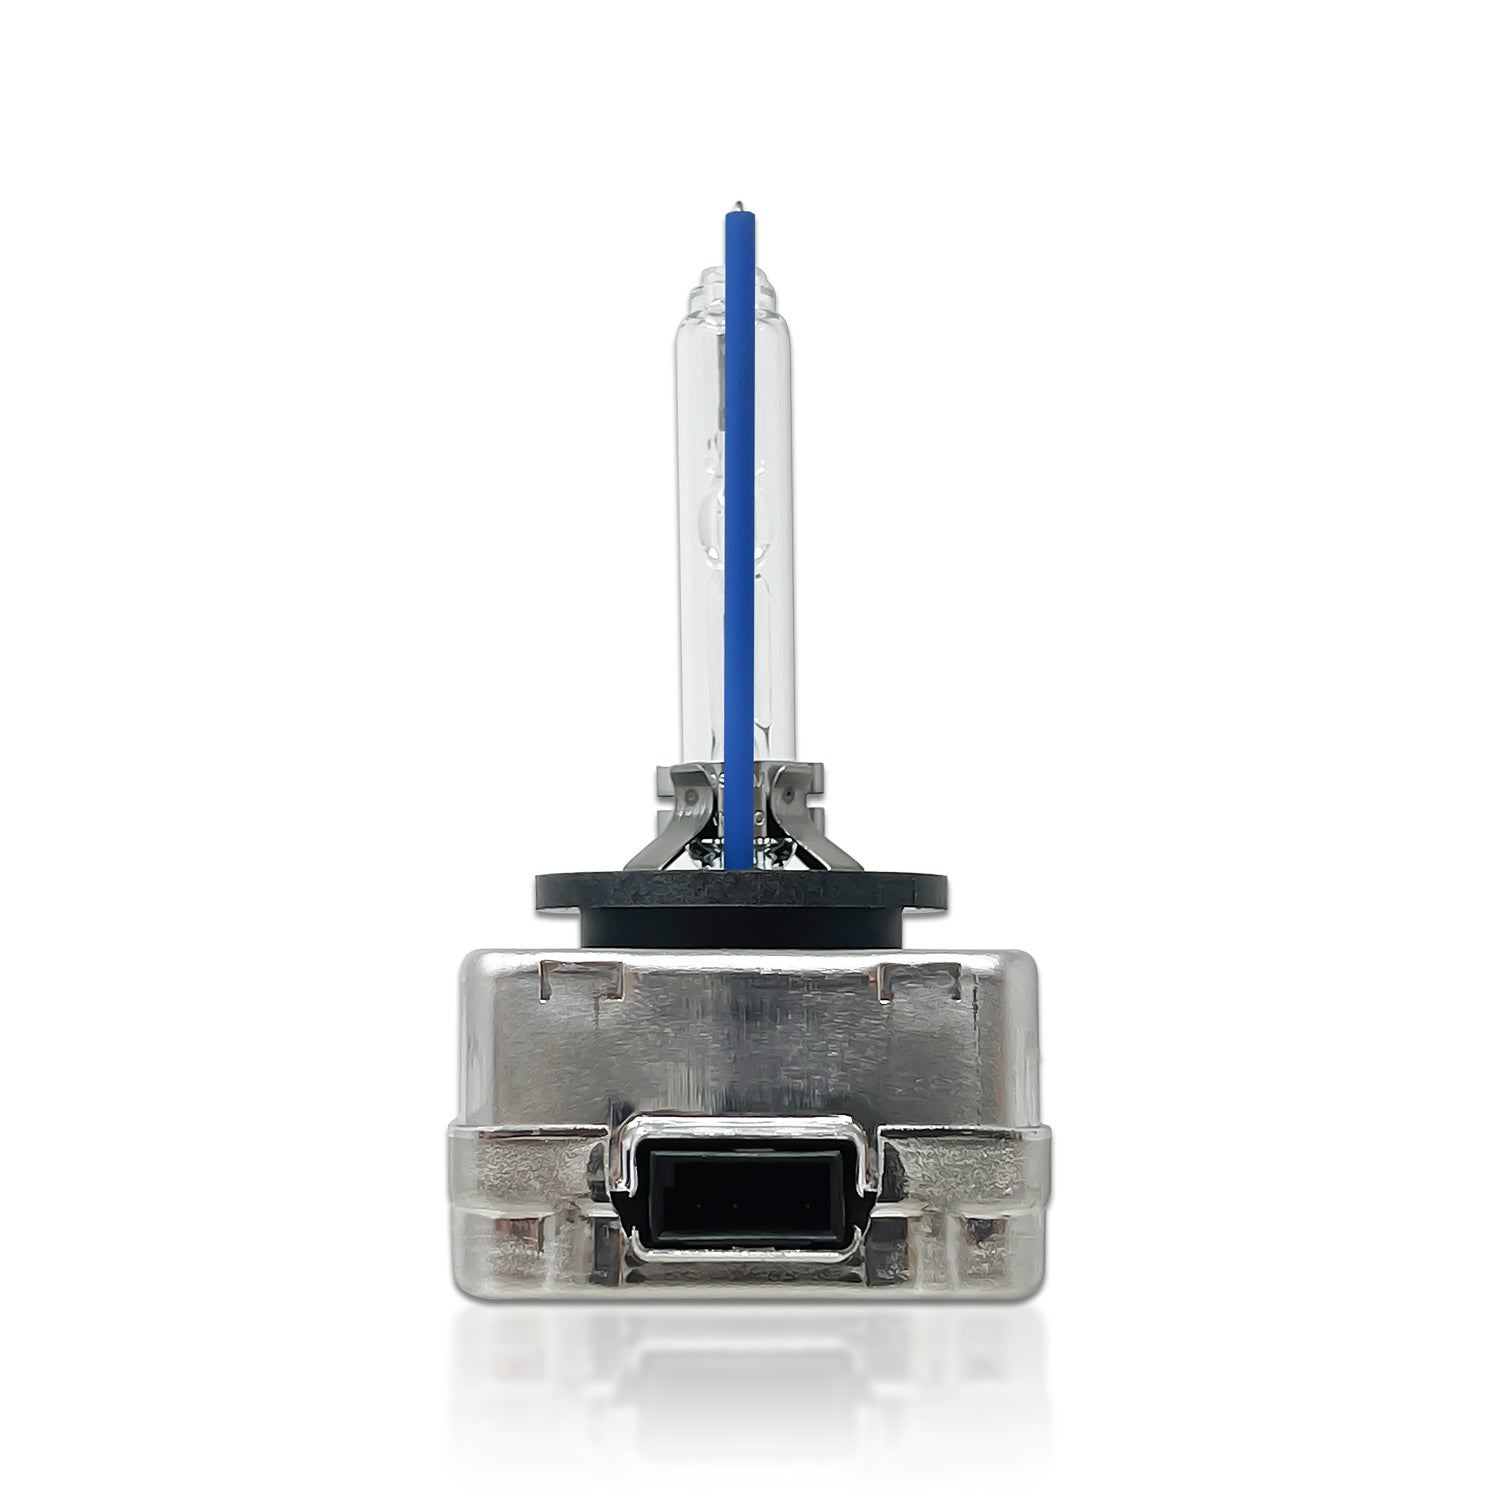 OSRAM Xenarc Cool Blue Boost D1S Xenon Car Headlight Bulbs (Twin